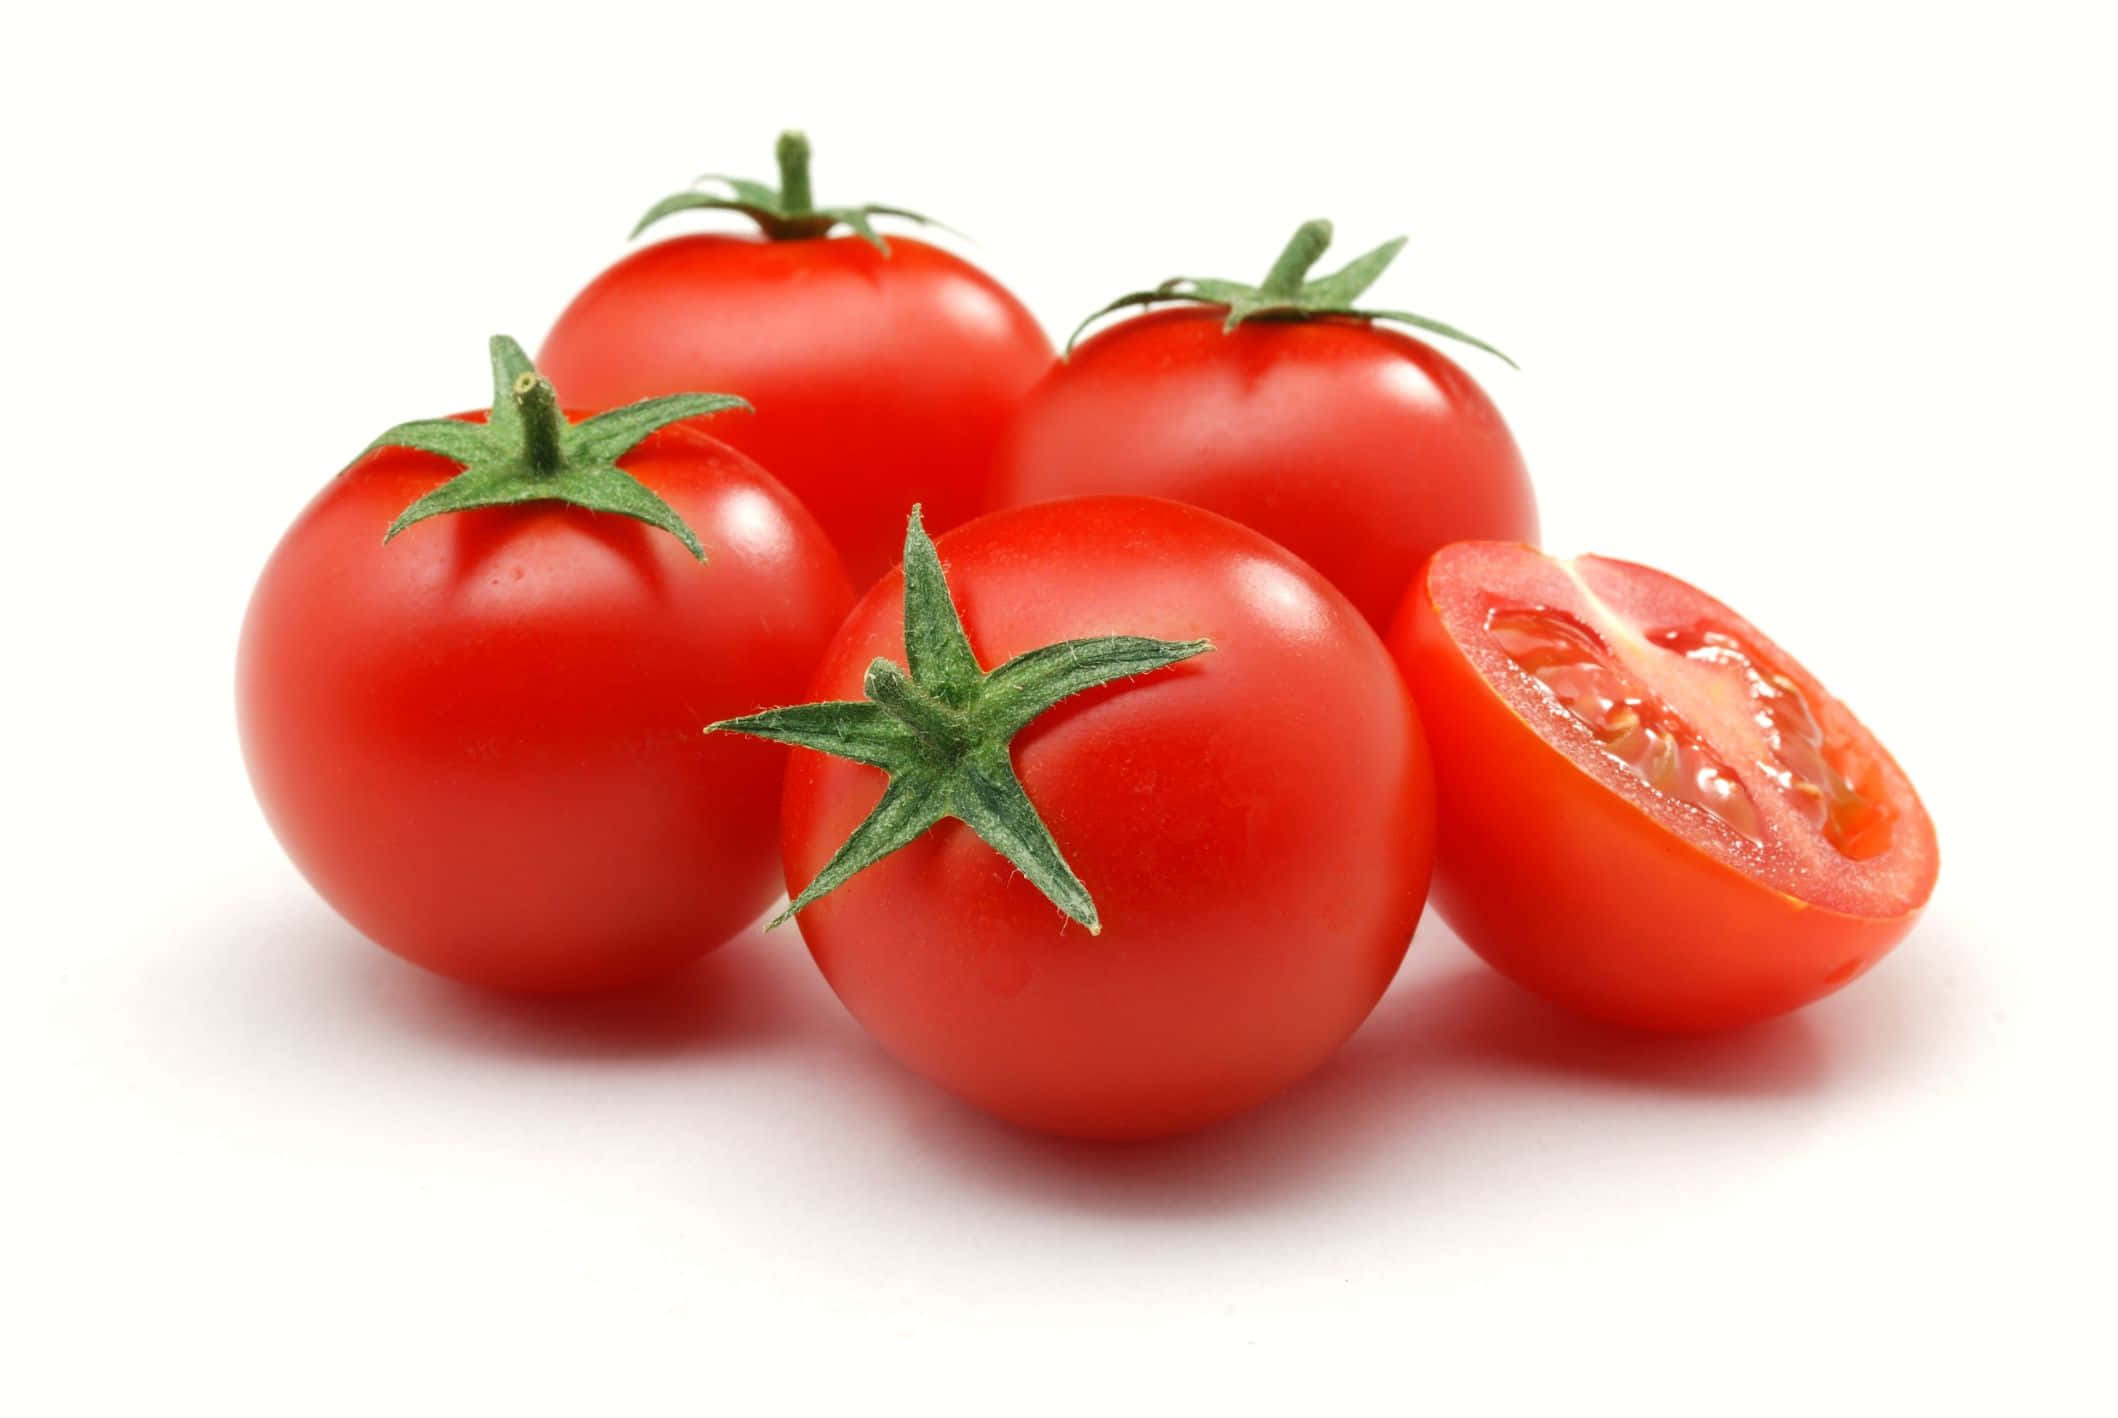 Ensaftig Rød Tomat, Der Glinser I Solen.